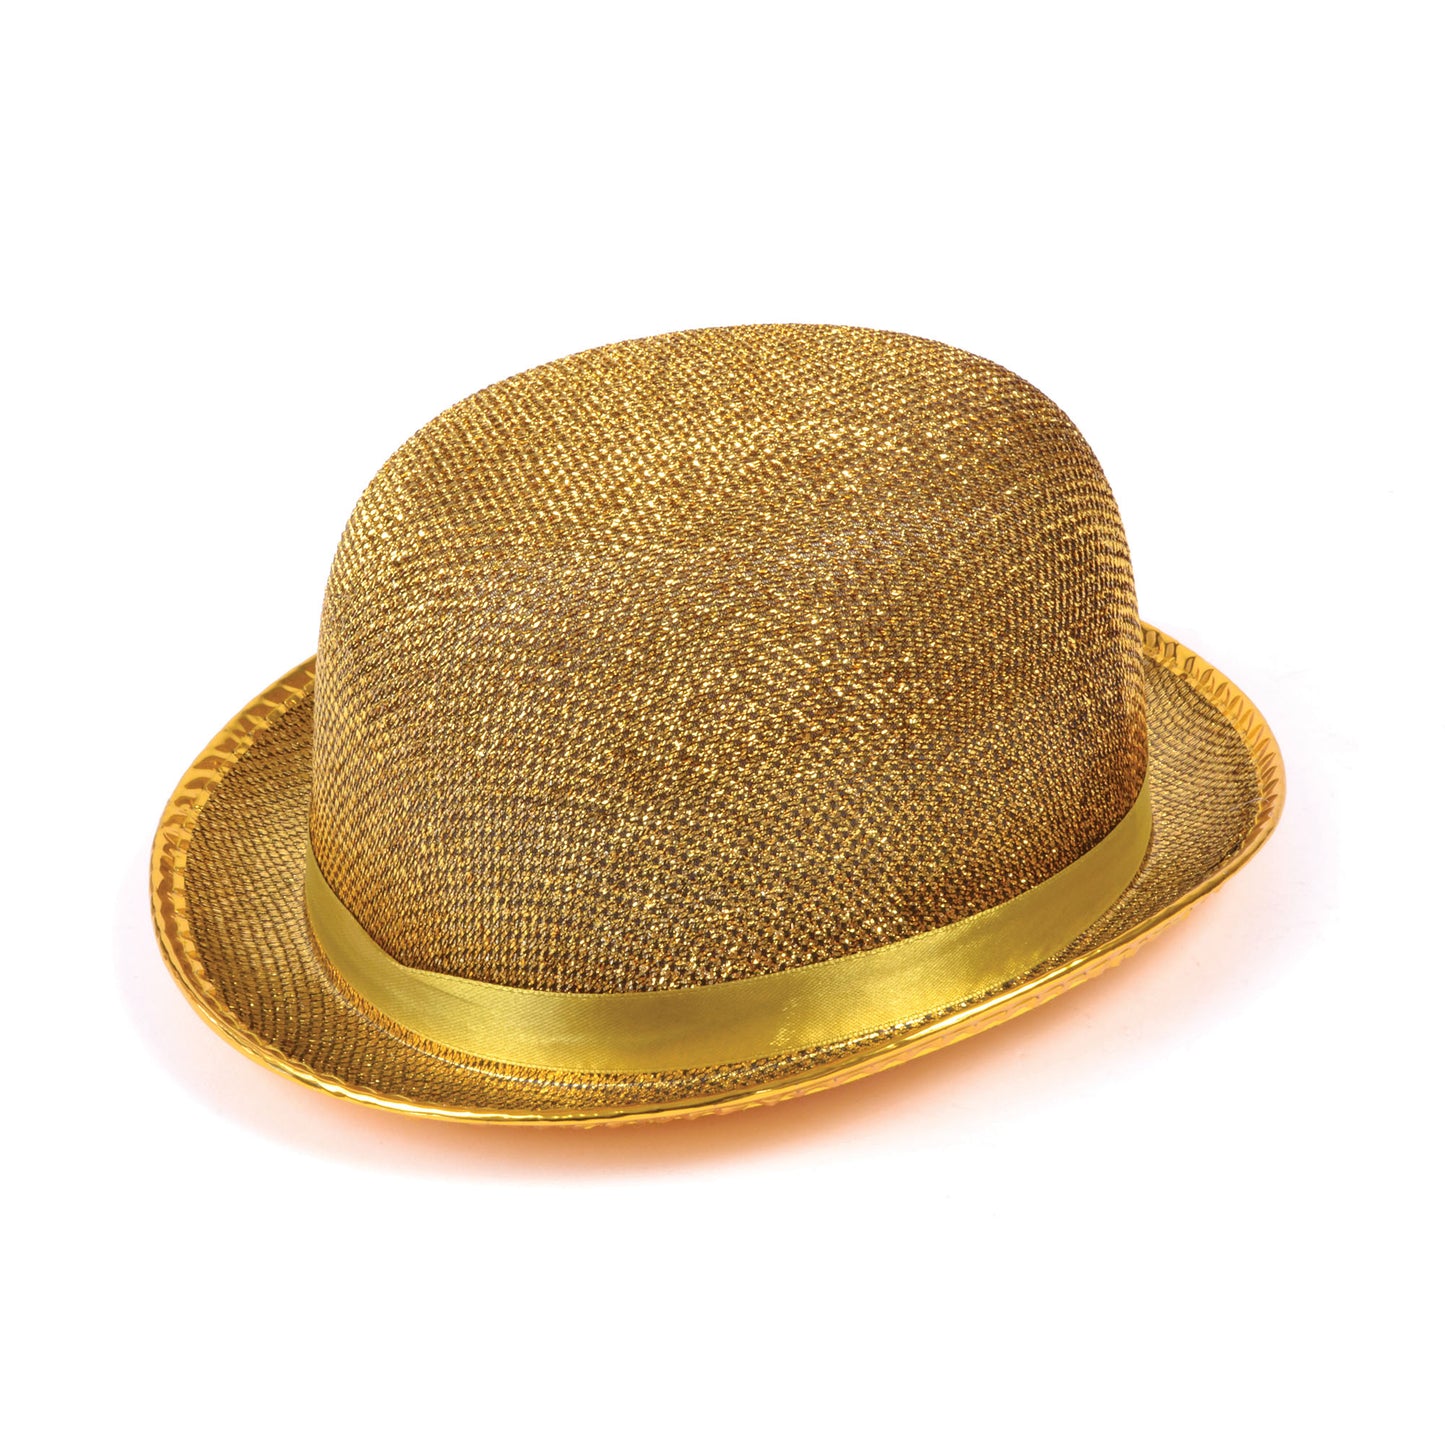 Gold Bowler Hat (Lurex)